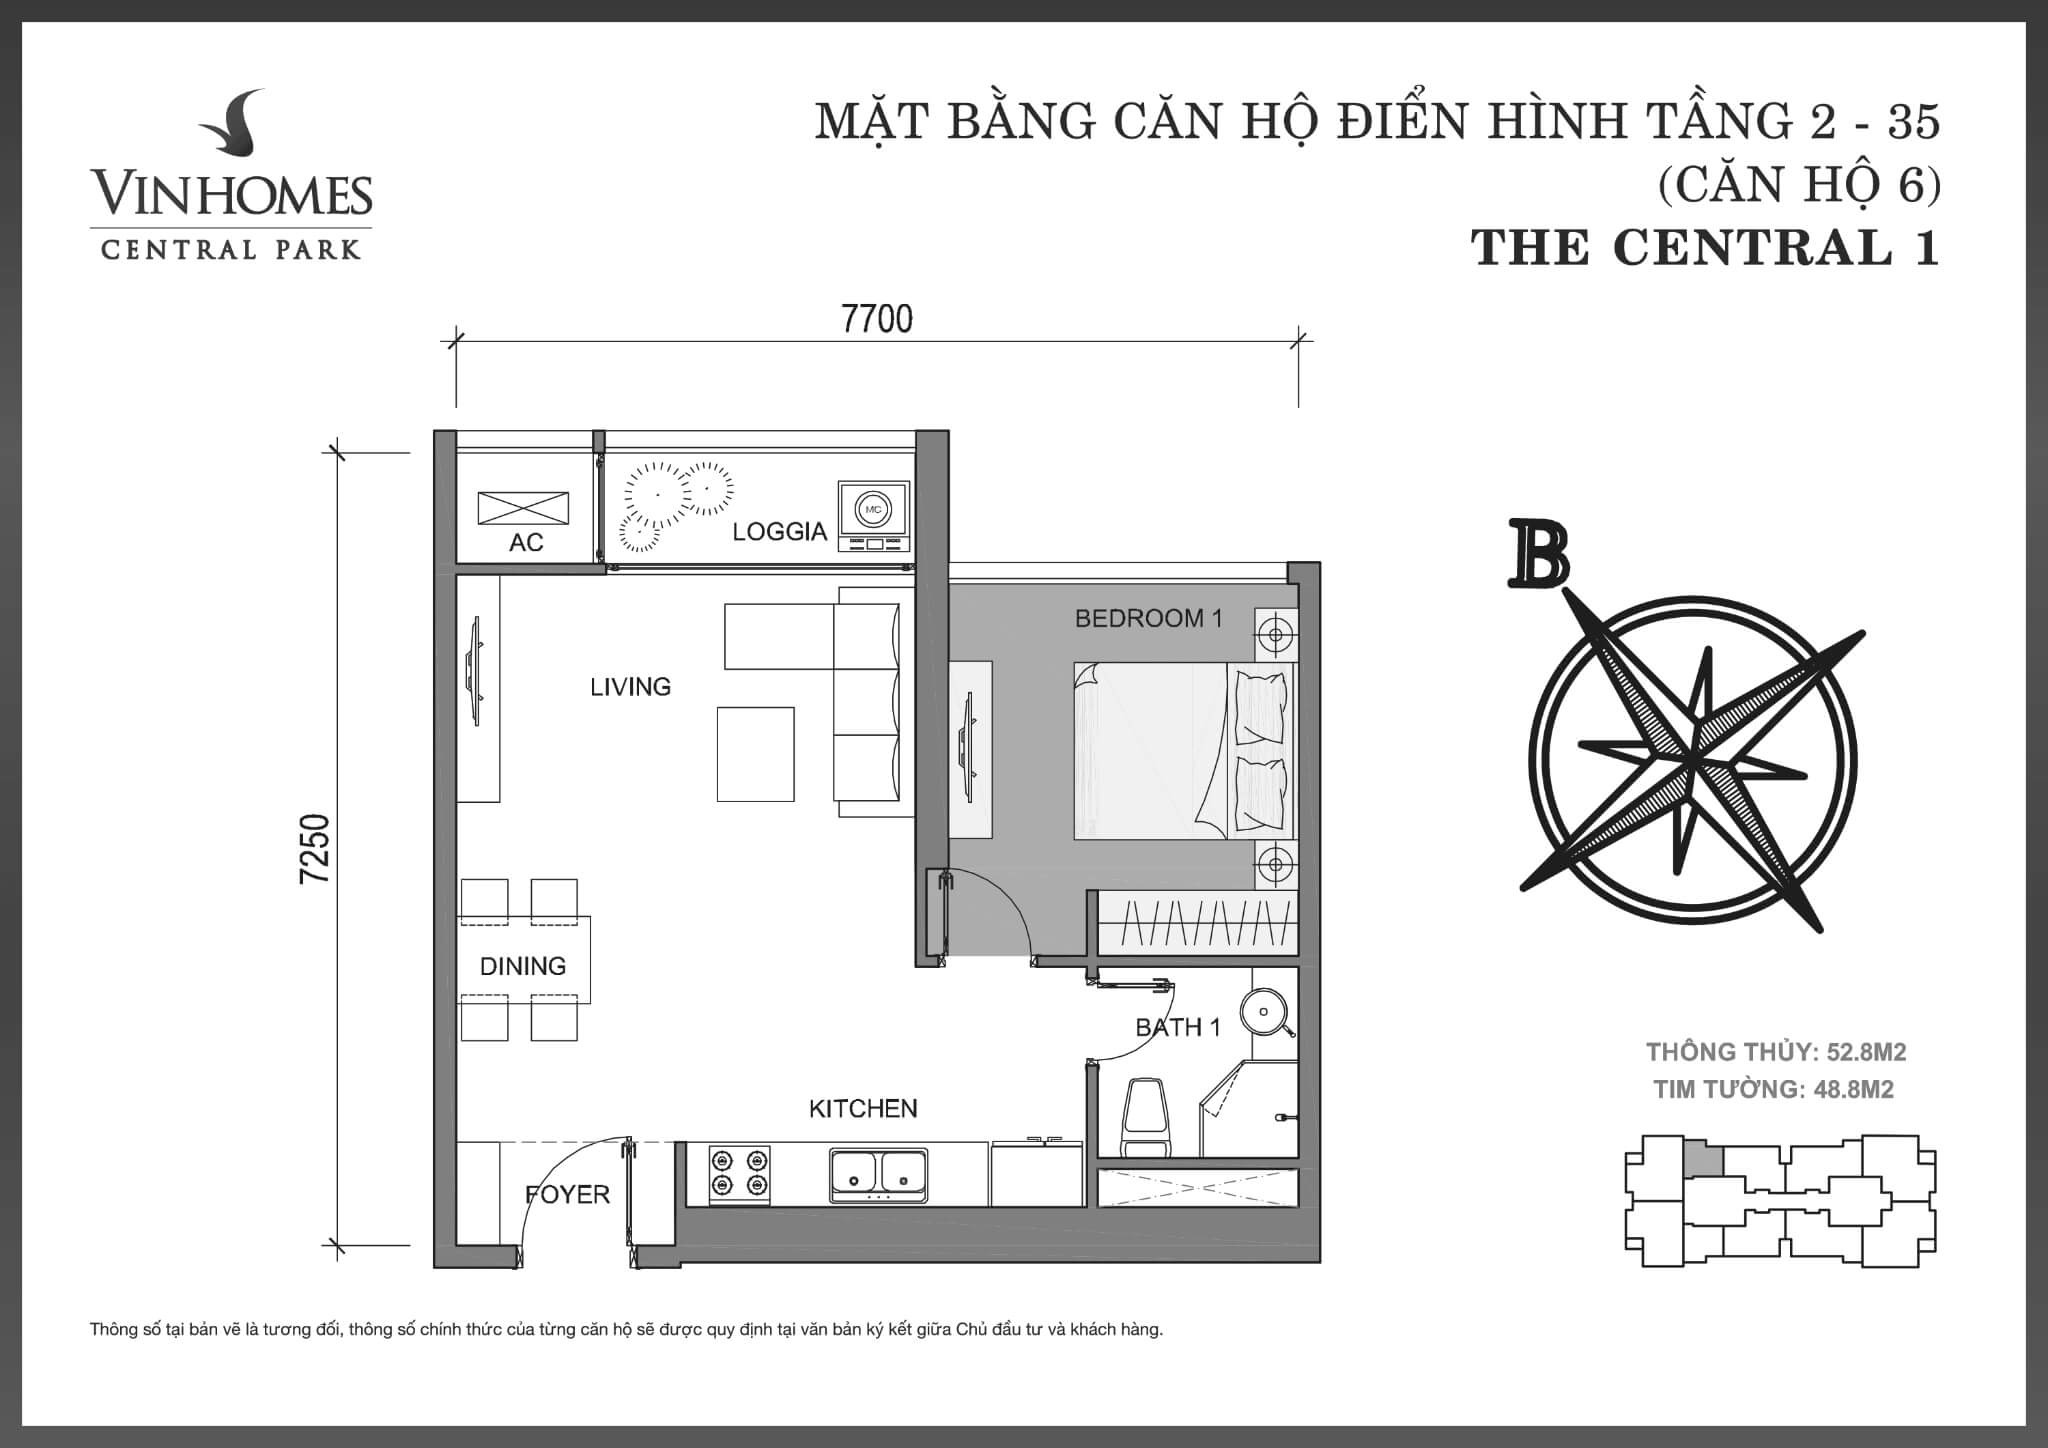 layout căn hộ số 6 tầng 2-35 Central 1